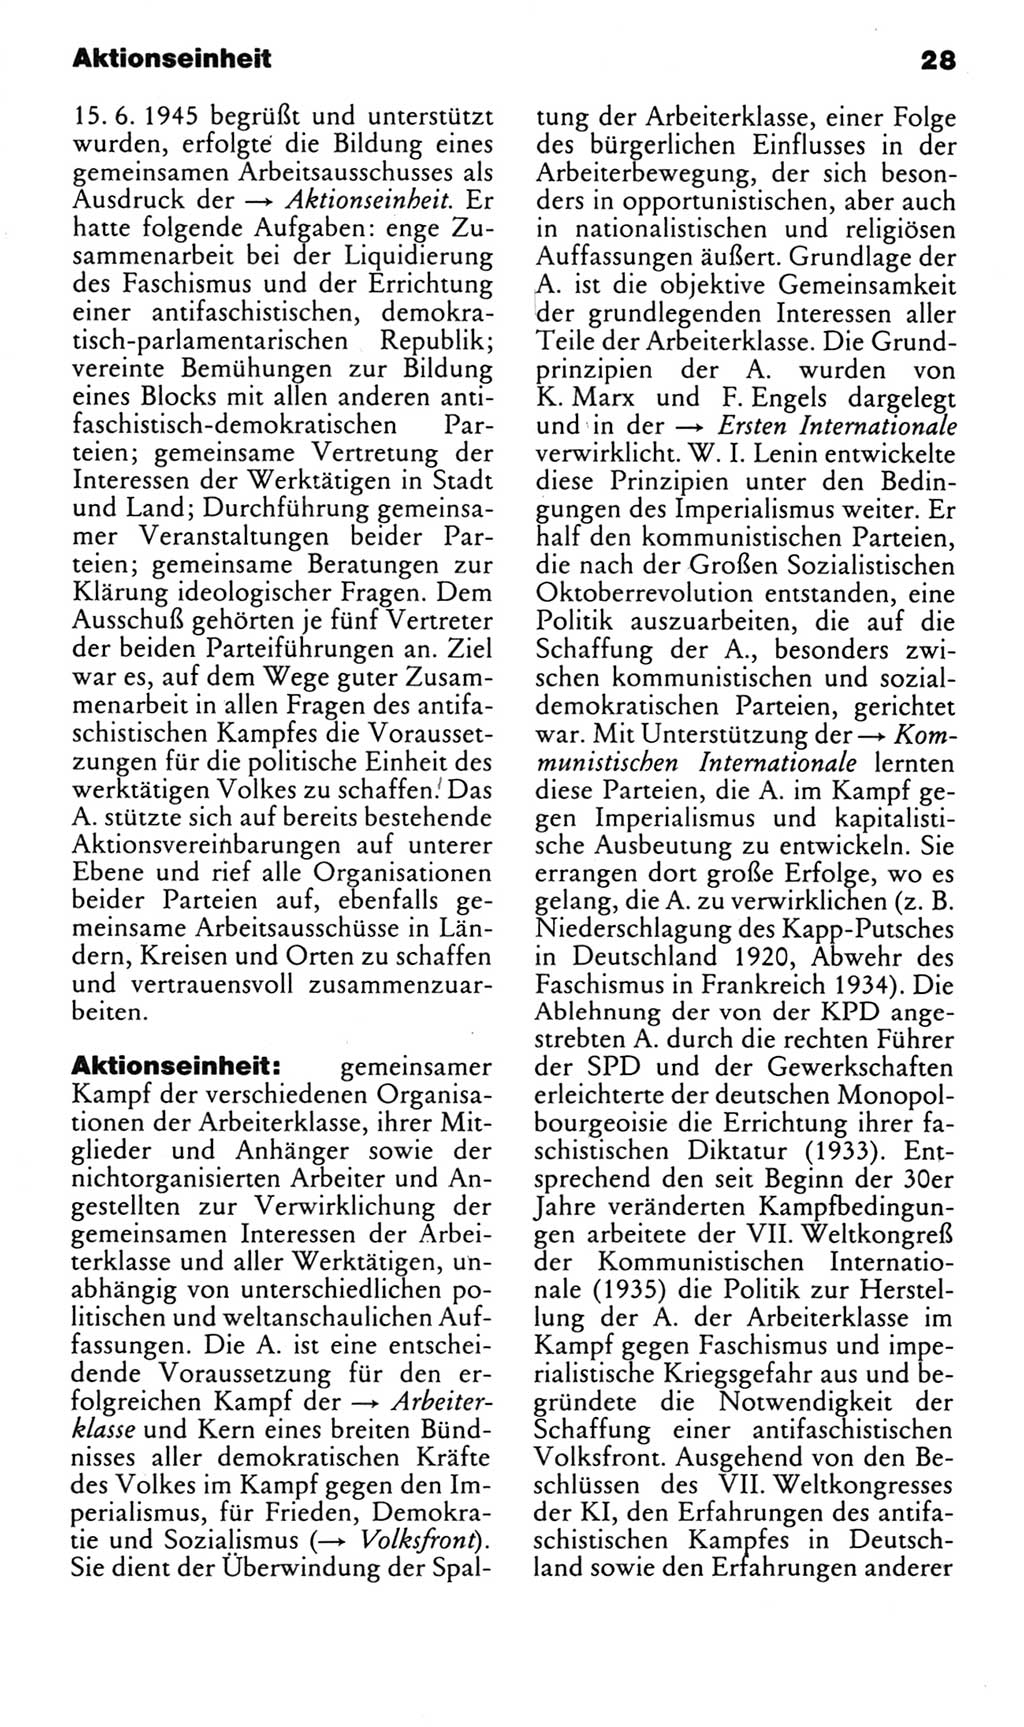 Kleines politisches Wörterbuch [Deutsche Demokratische Republik (DDR)] 1983, Seite 28 (Kl. pol. Wb. DDR 1983, S. 28)